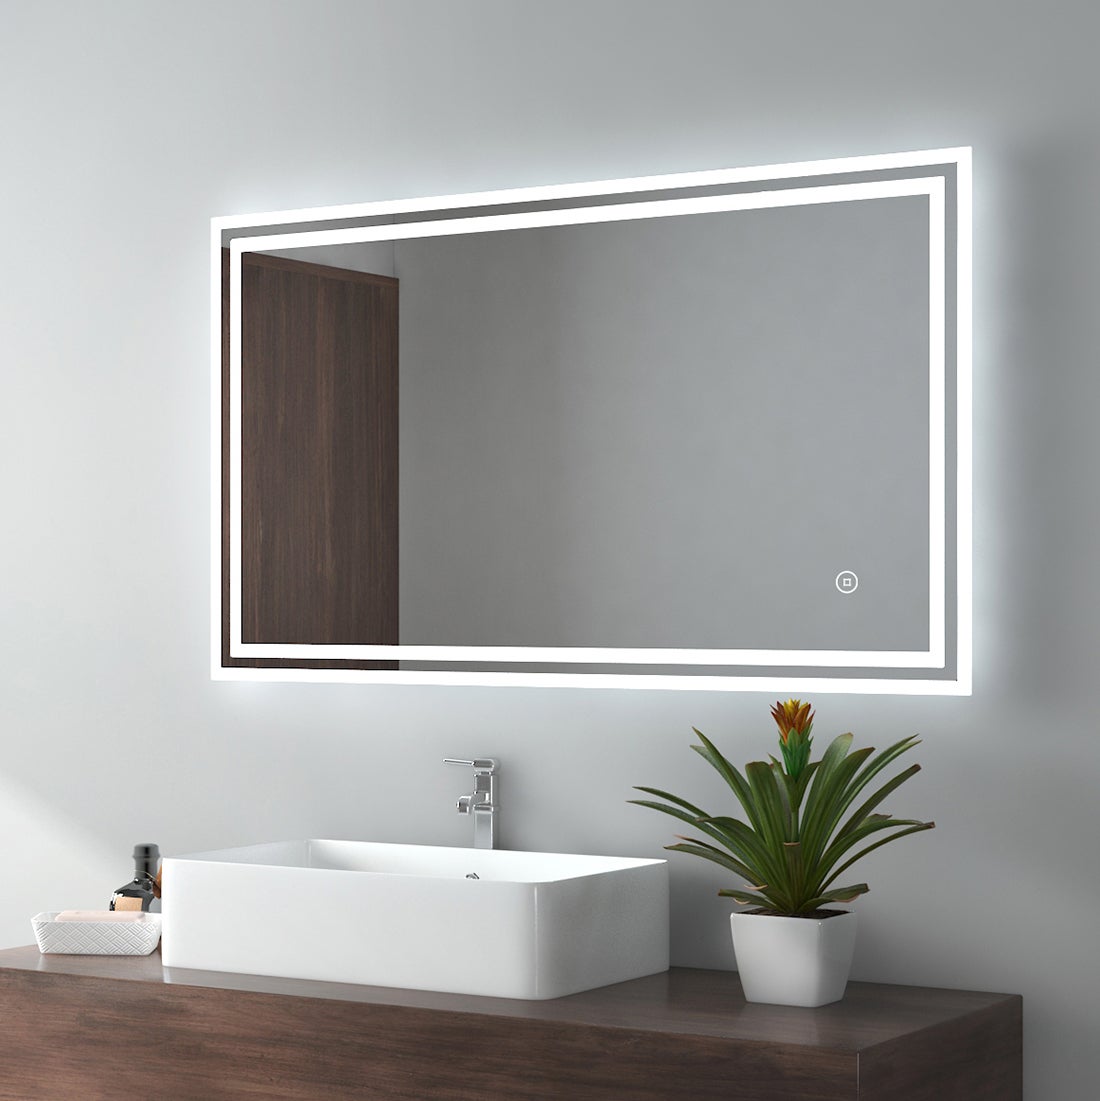 EMKE Badspiegel LED IP44 Wasserdicht, 100x60cm, Kaltweißes/Neutral/Warmweißes Licht Dimmbar, Touchschalter